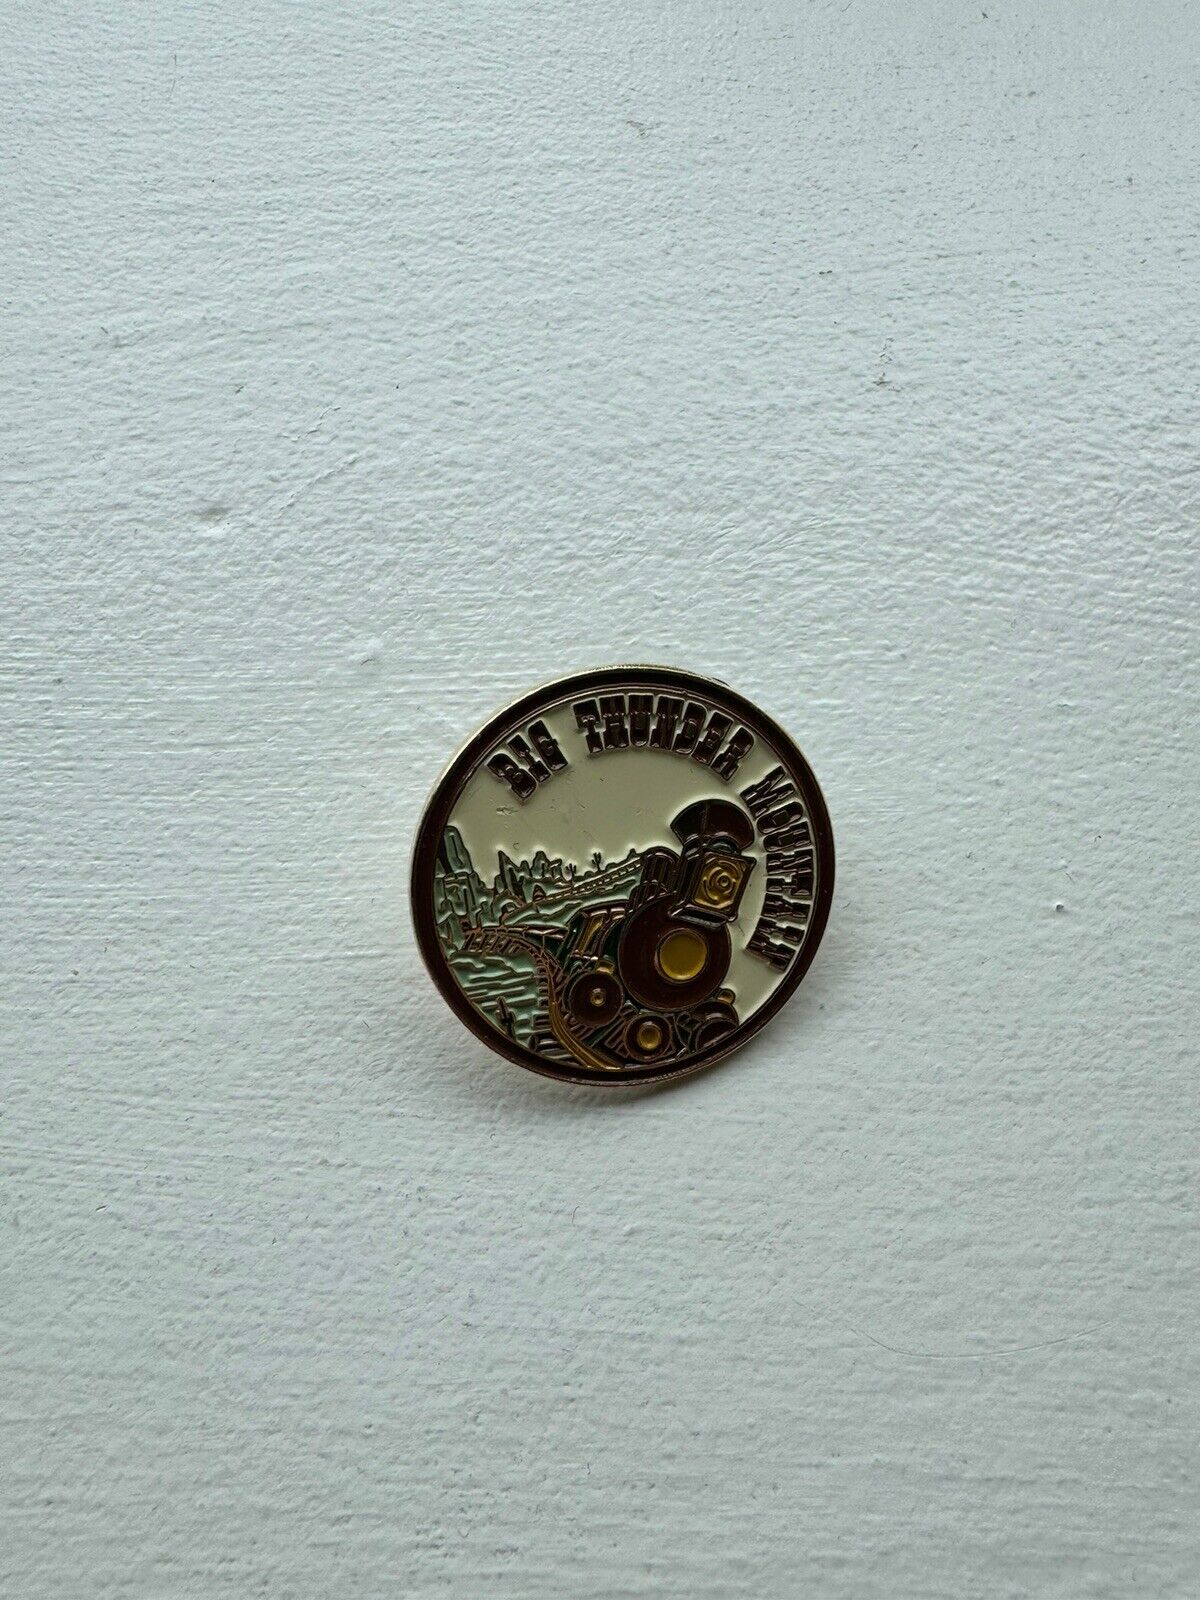 Disneyland Paris Rare Old Thunder Mountain Pin